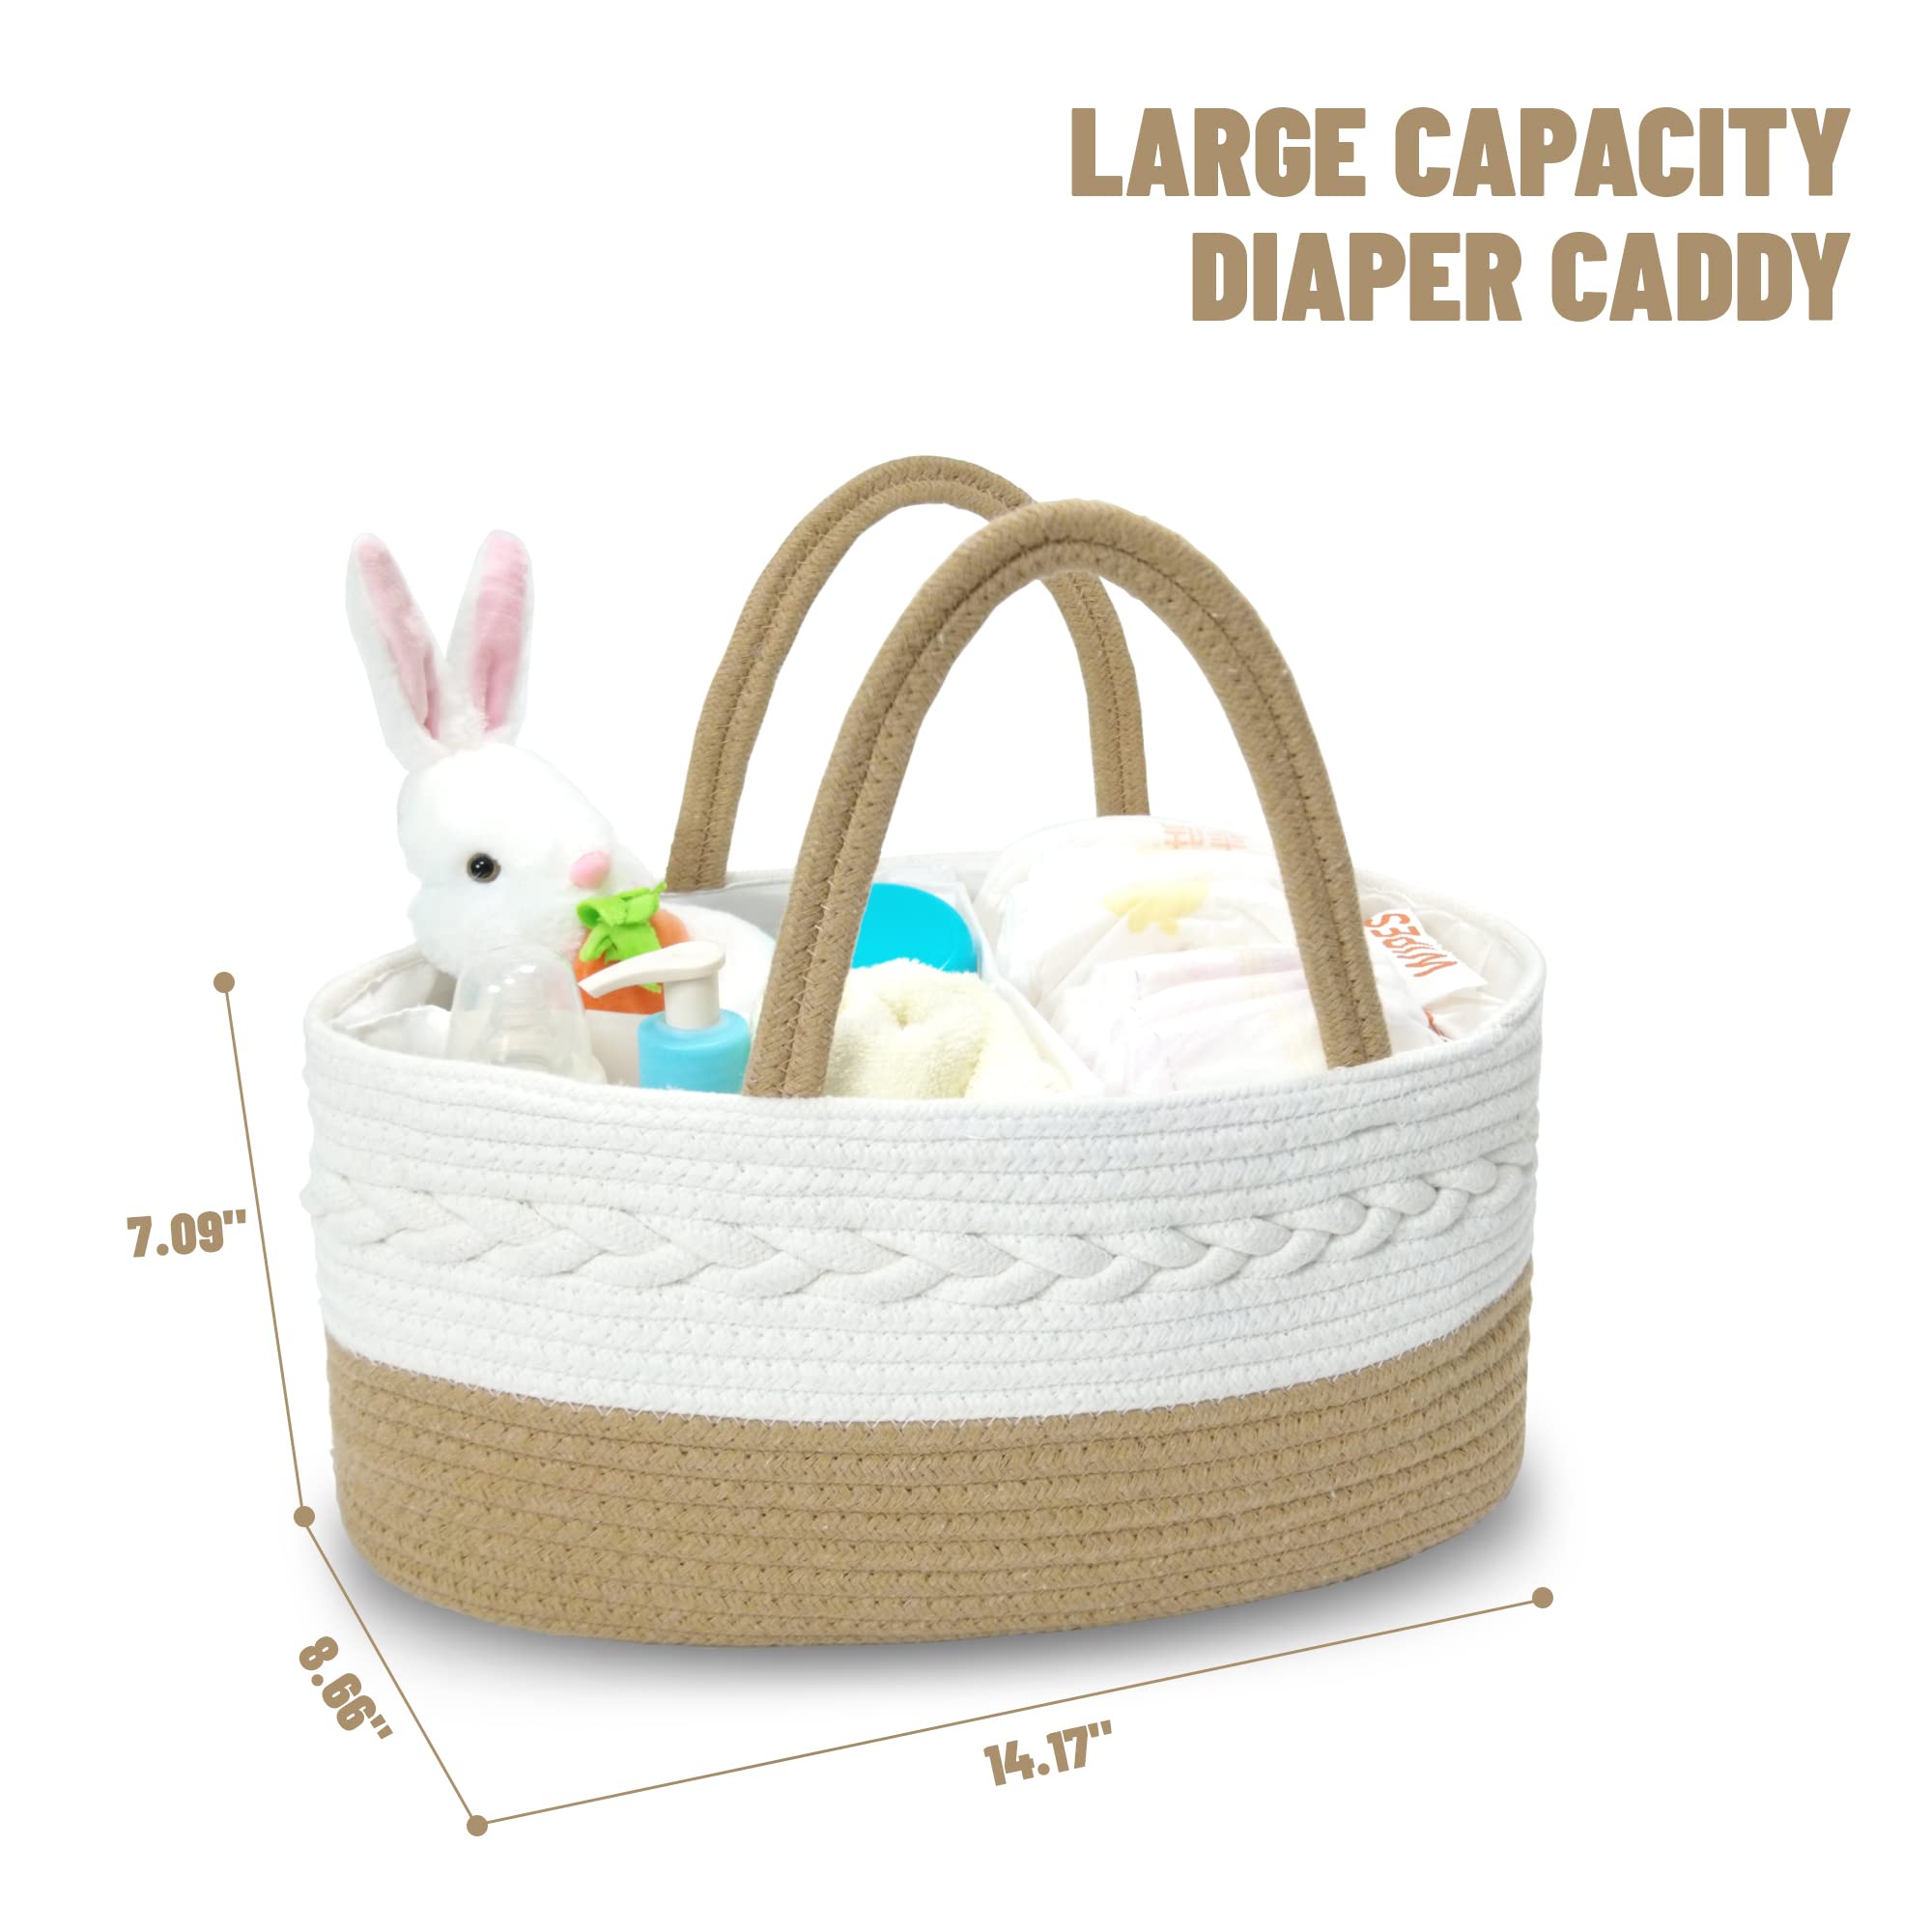 XL Baby Diaper Caddy Organizer - Heavy Duty Portable Diaper